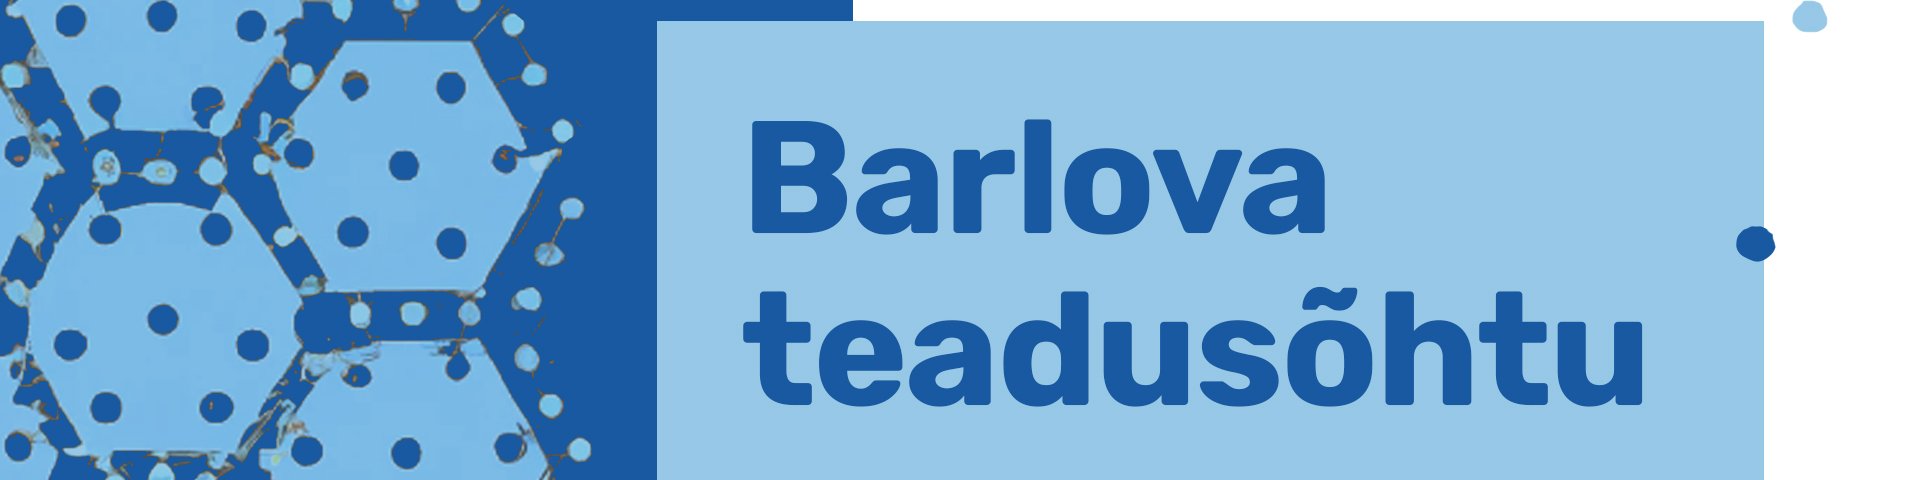 Barlova teadusõhtu - Tartu Ülikool